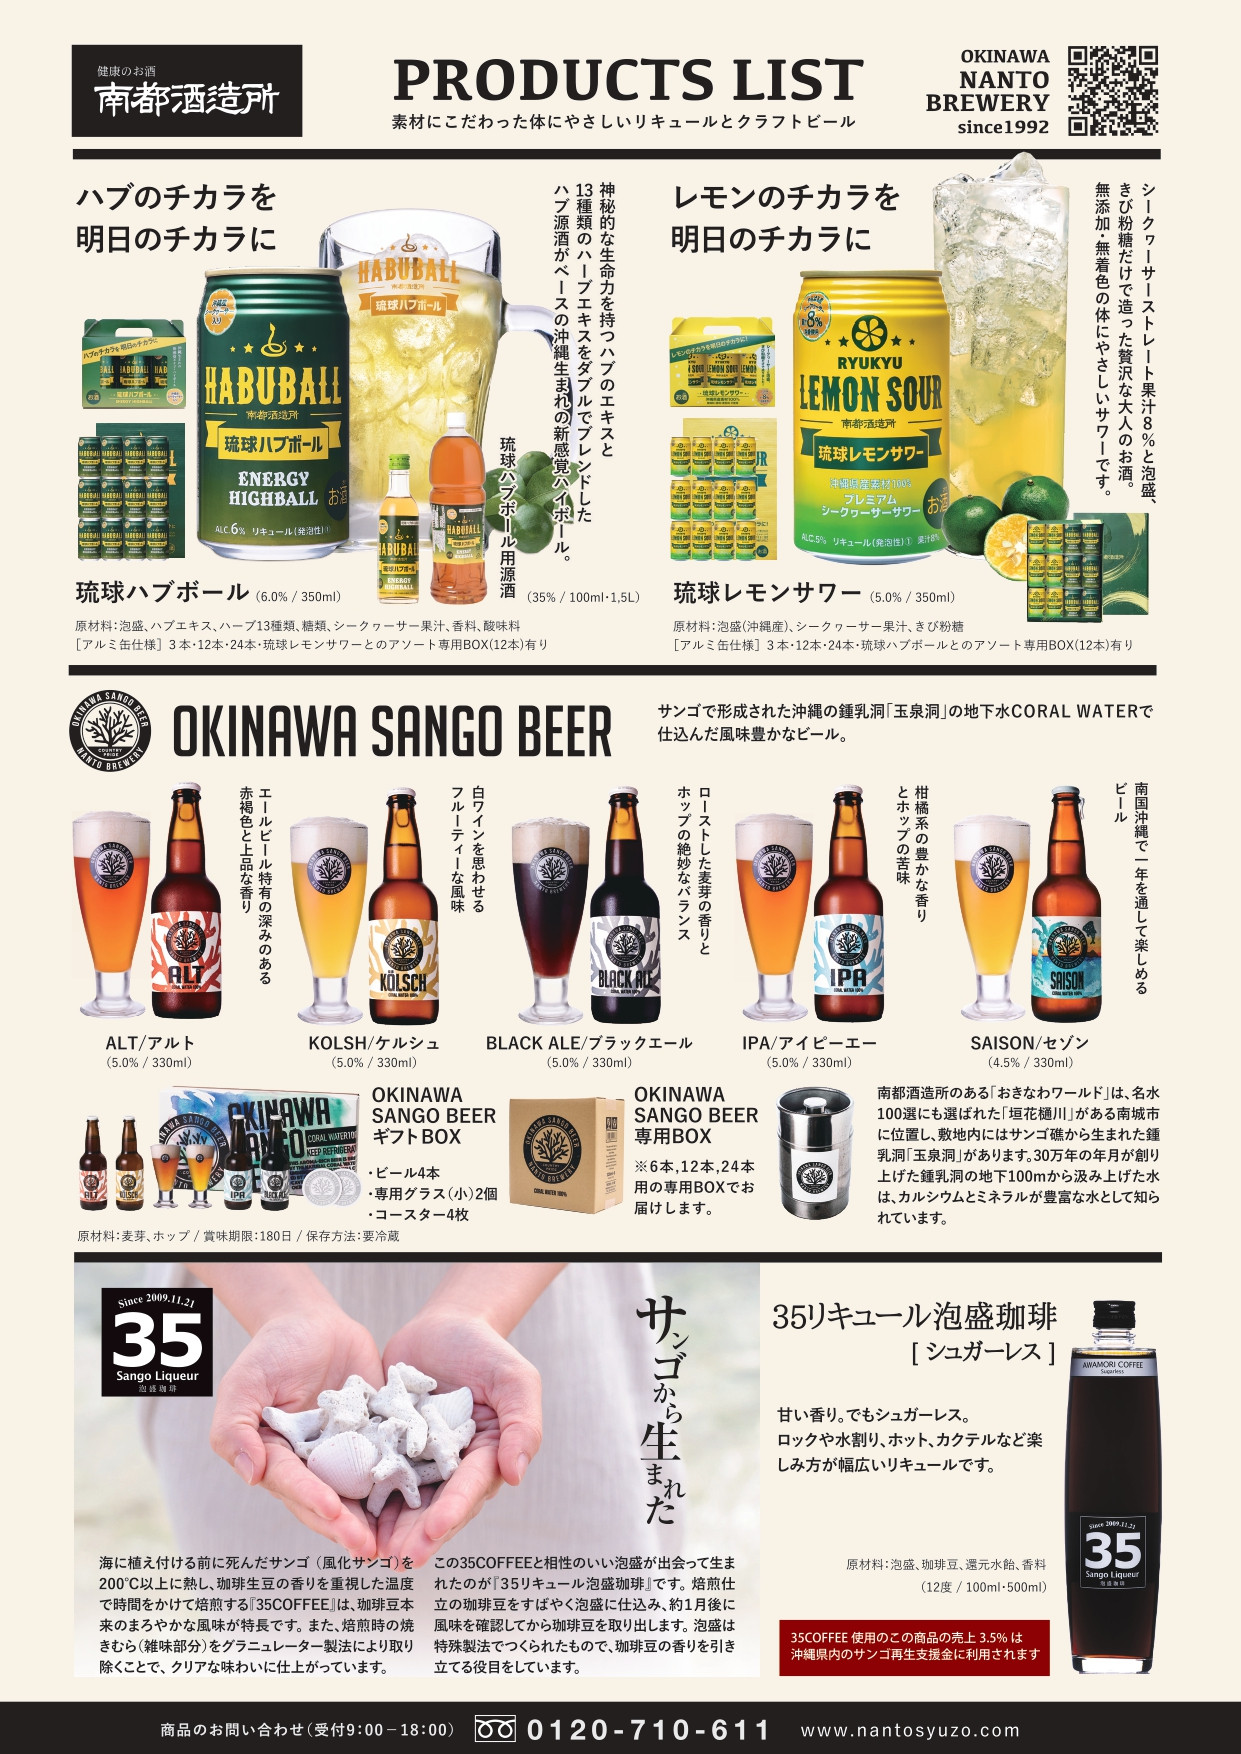 琉球レモンサワー 350ml 24缶セット【サワー お酒 酒 さけ 人気